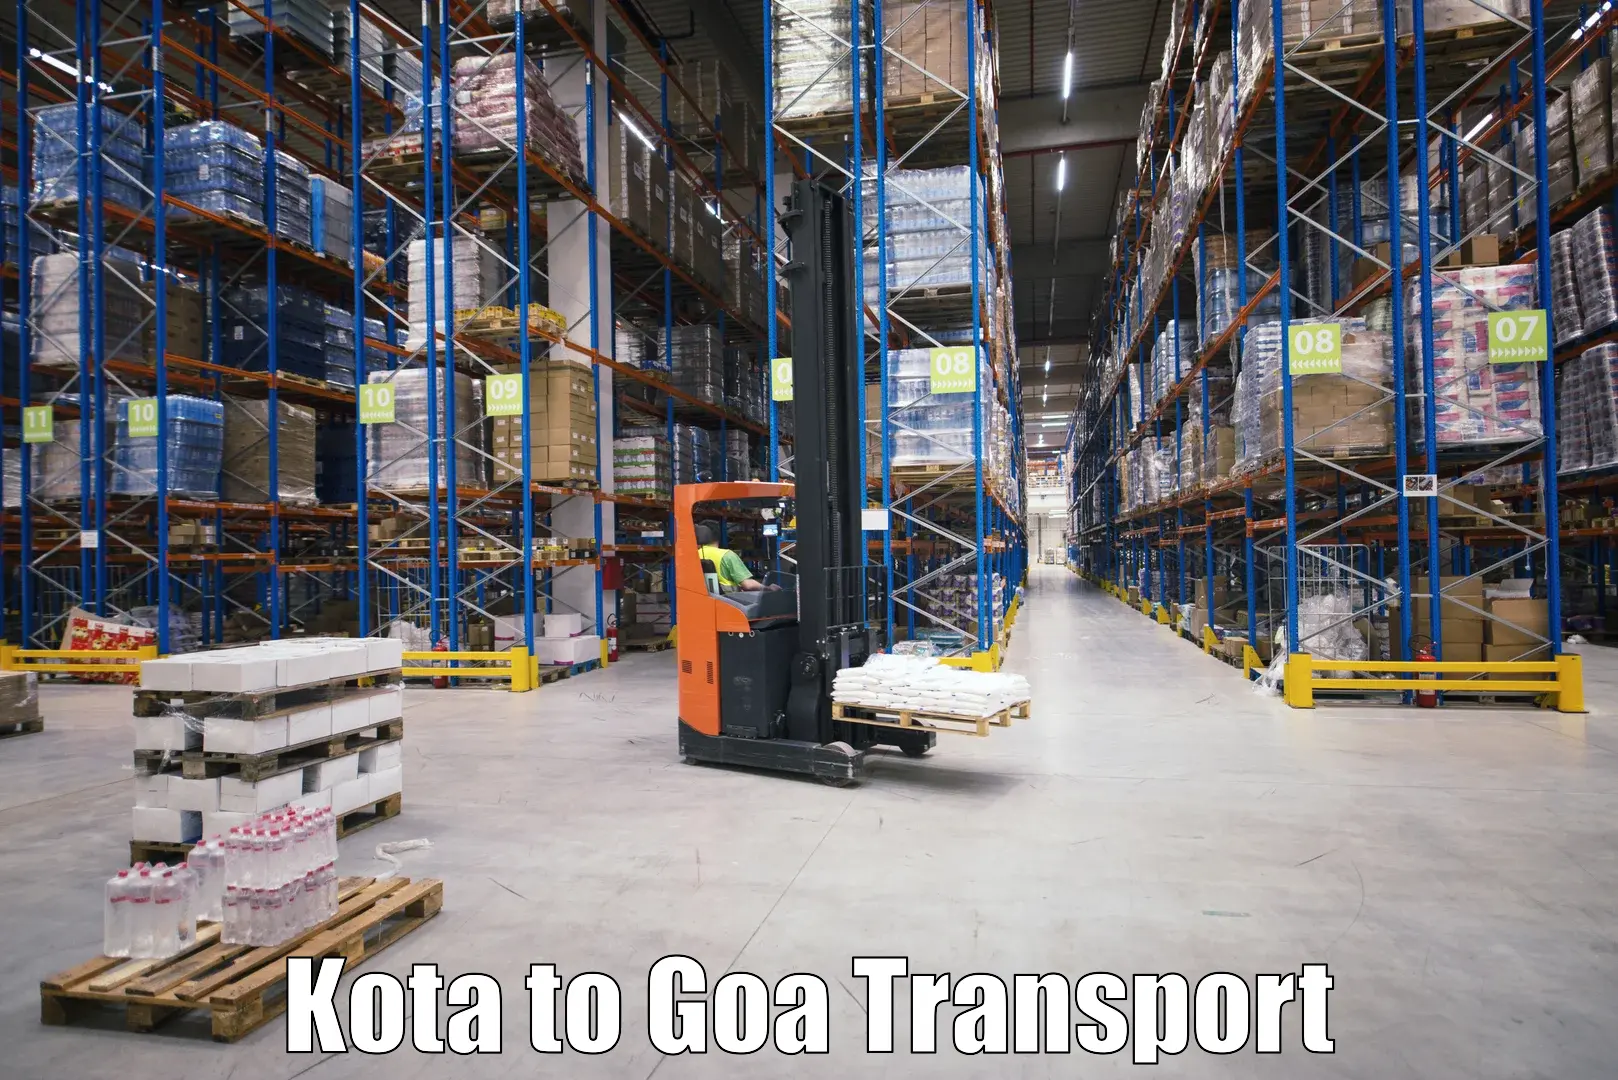 Nearest transport service Kota to Bicholim